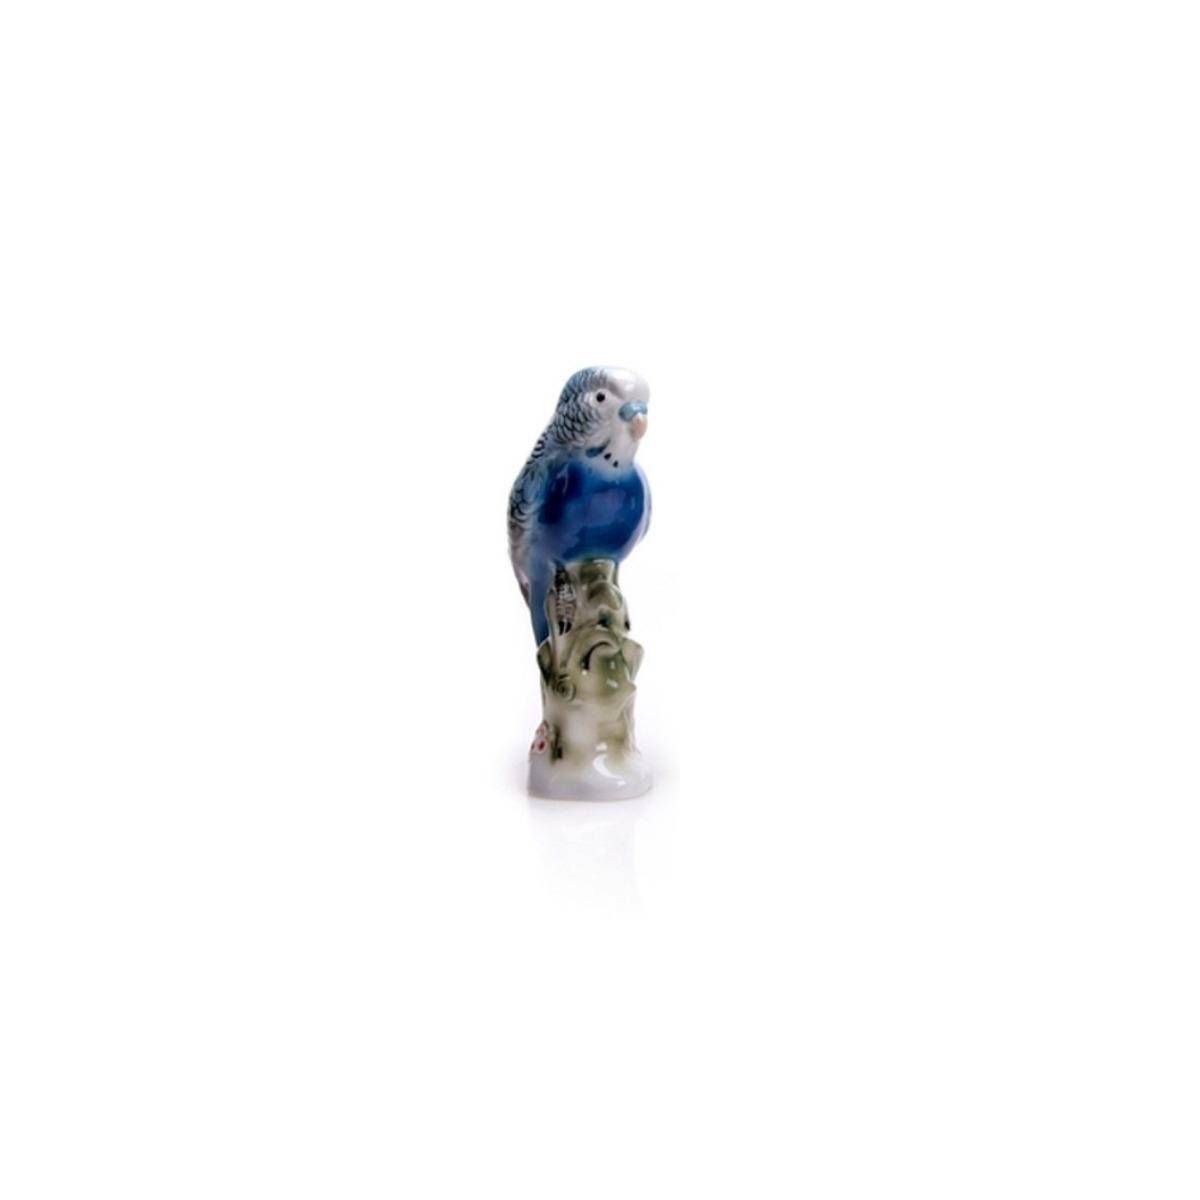 Wagner & Apel Porzellan Dekofigur 03026/40 BLAU - Wellensittich, blau | Dekofiguren